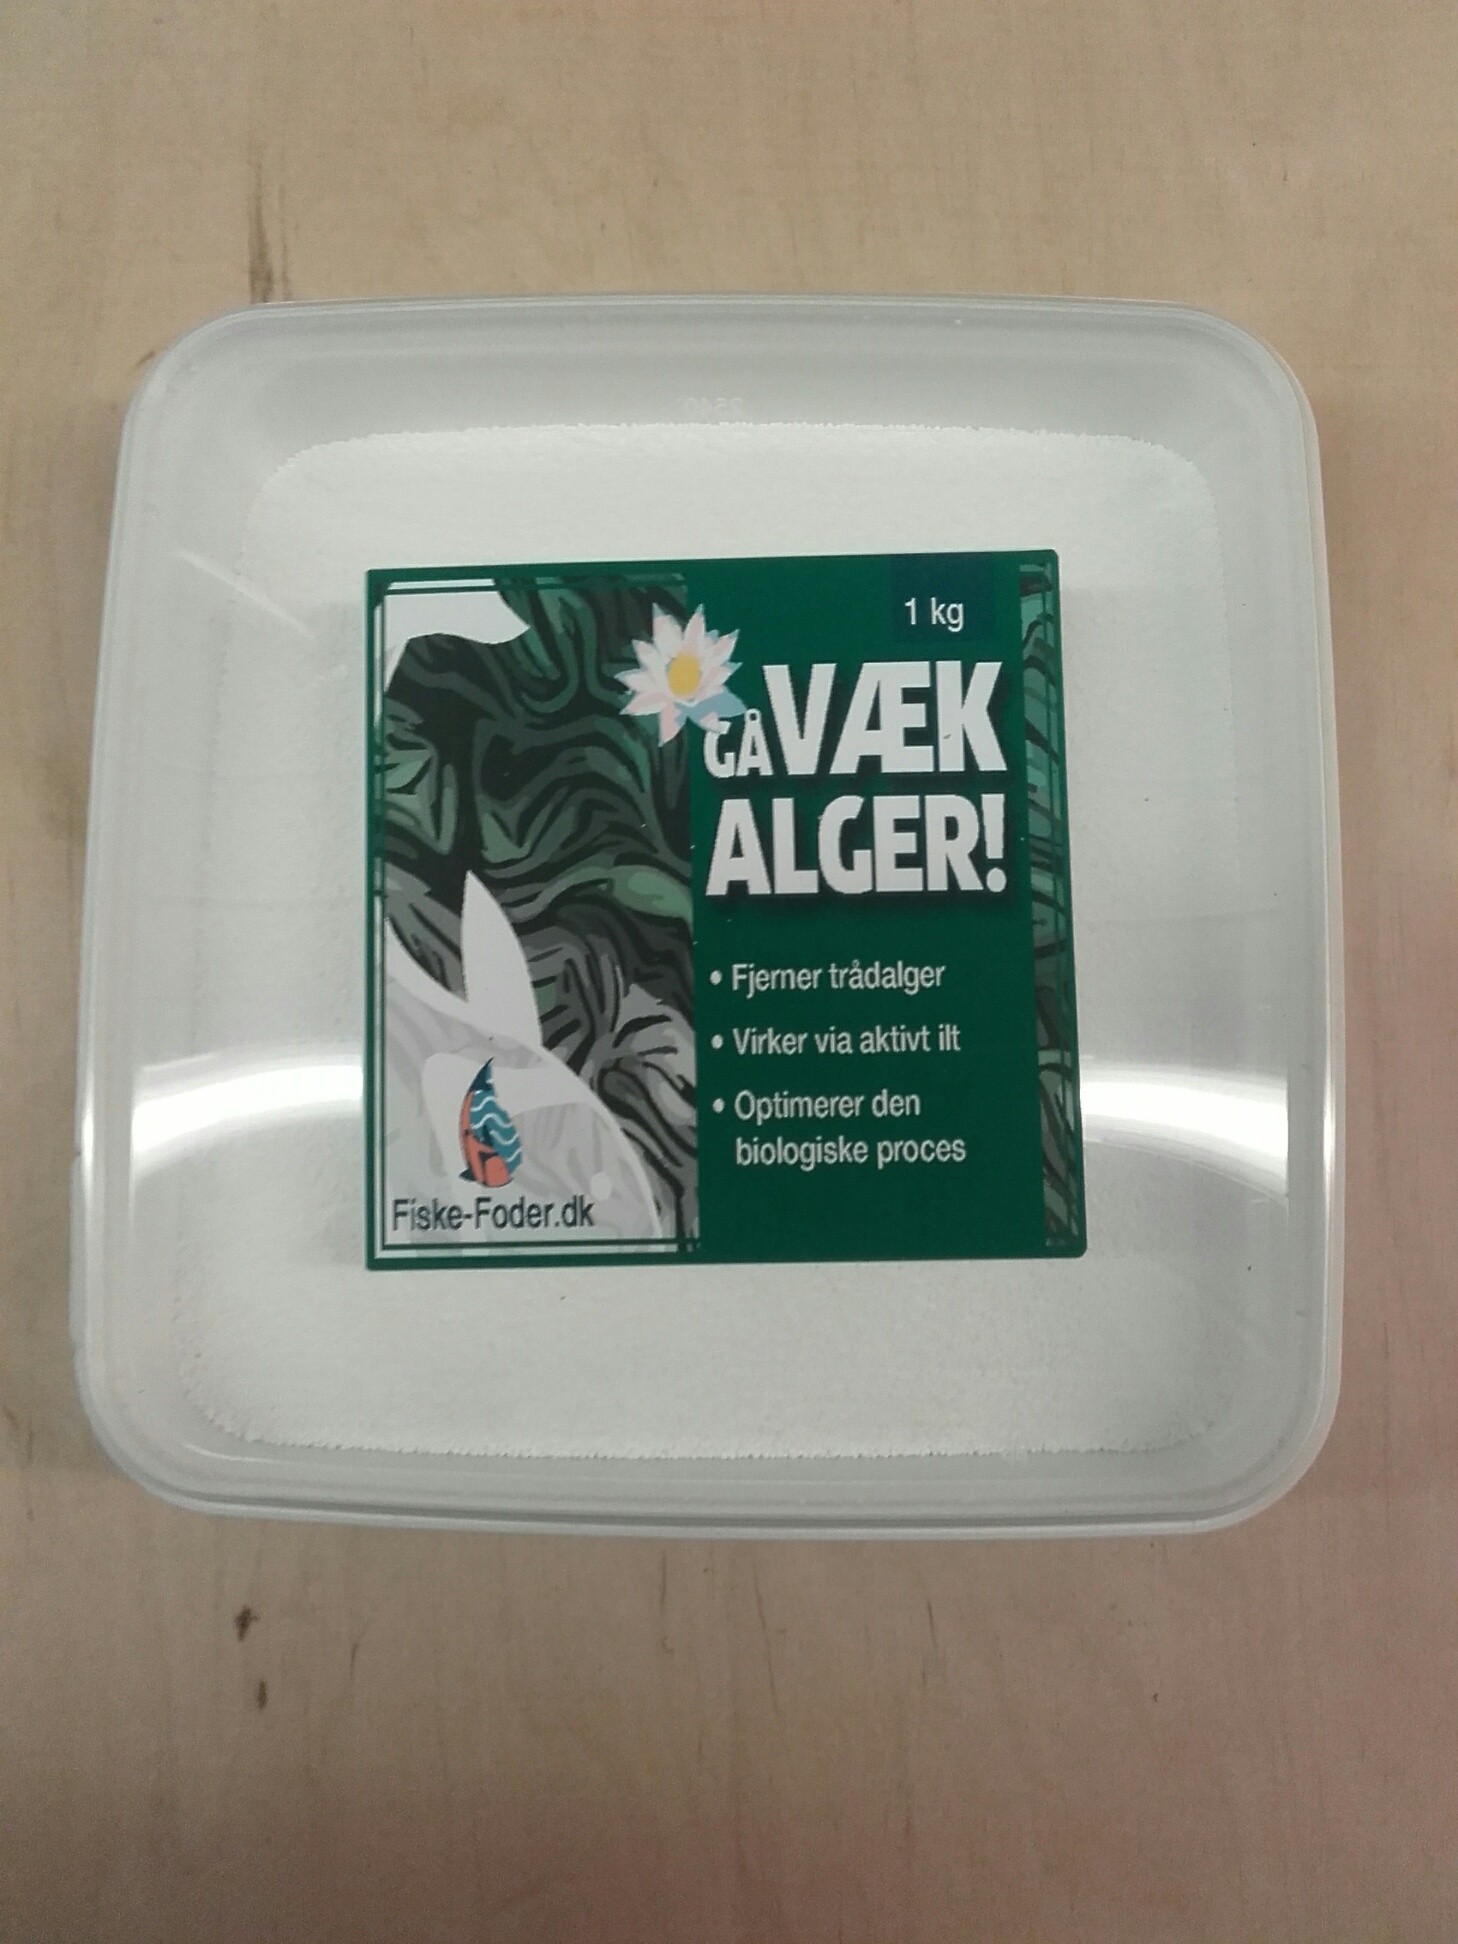 Gå Væk alger 1 kg  (Trådalge fjerner)